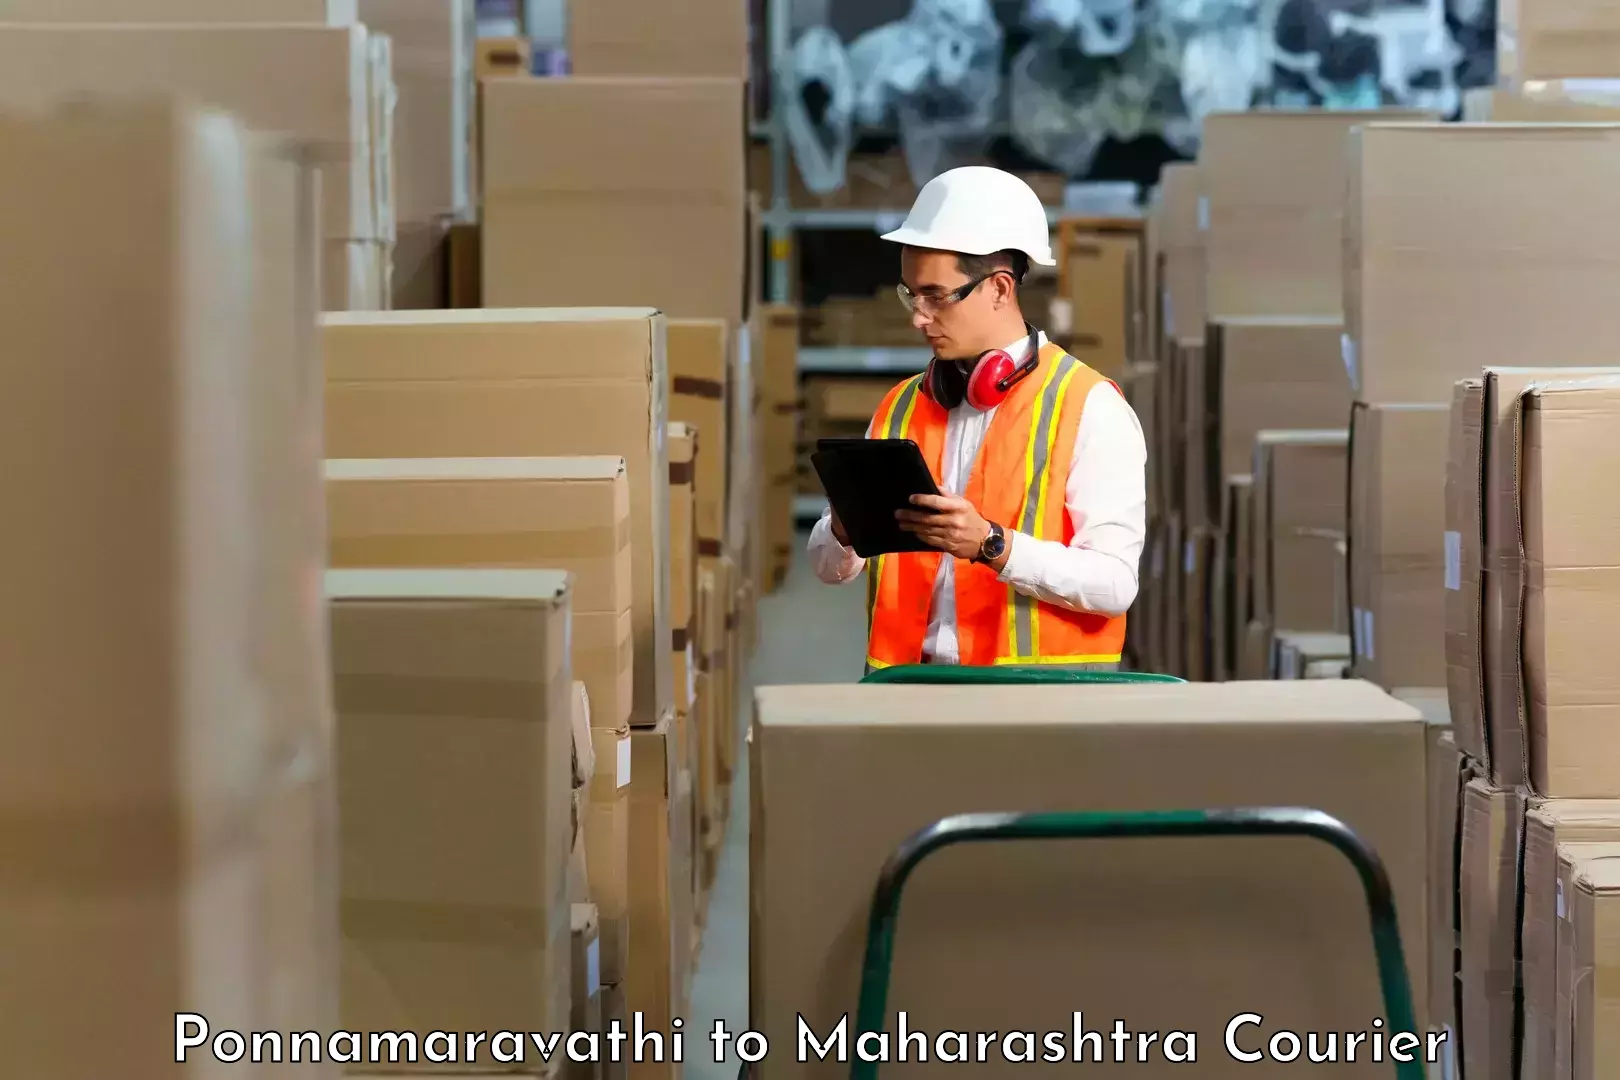 Efficient freight service Ponnamaravathi to Maharashtra